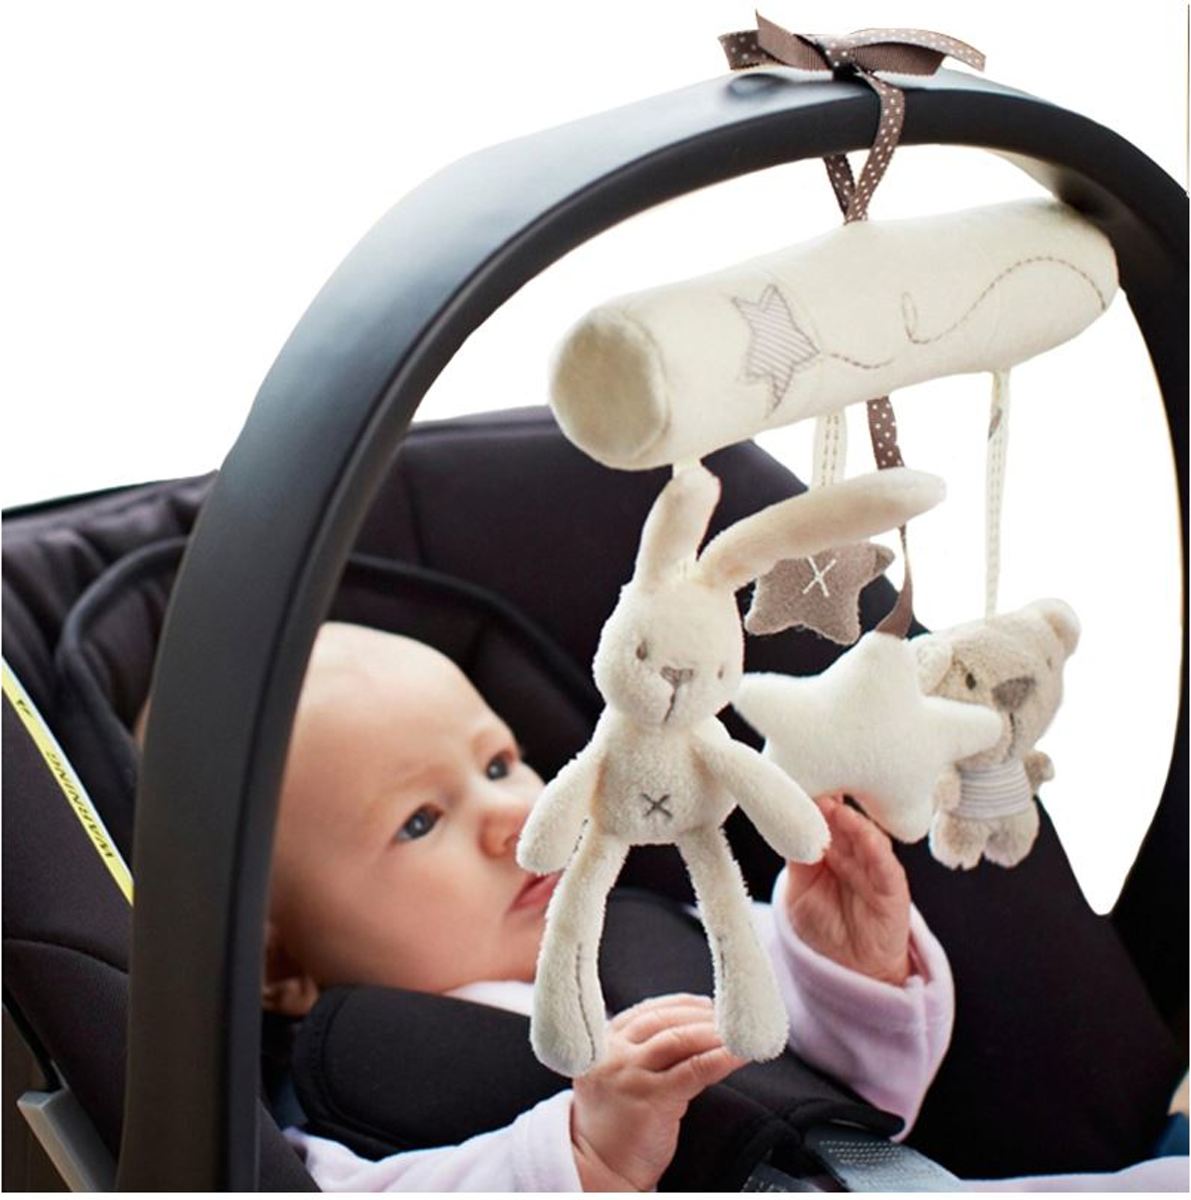 Baby hang knuffel – Baby Knuffels - Baby speelgoed – met geluidsknop - maxi cosi knuffel - kinderwagen speelgoed knuffel - buggy speelgoed - auto knuffel - Autostoel hang knuffel – Kinderbed knuffel- Muzikale konijn